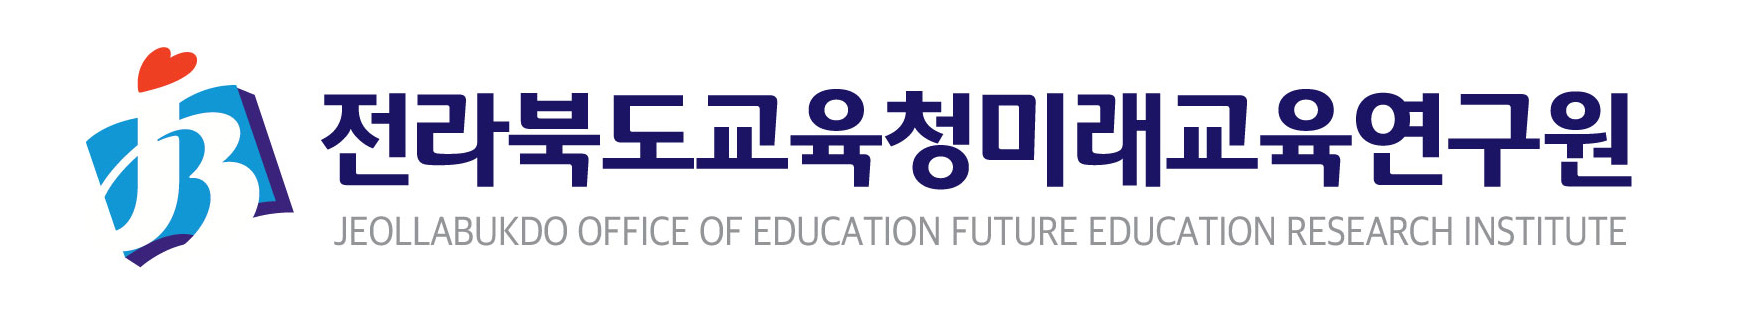 전라북도교육청미래교육연구원 아이콘